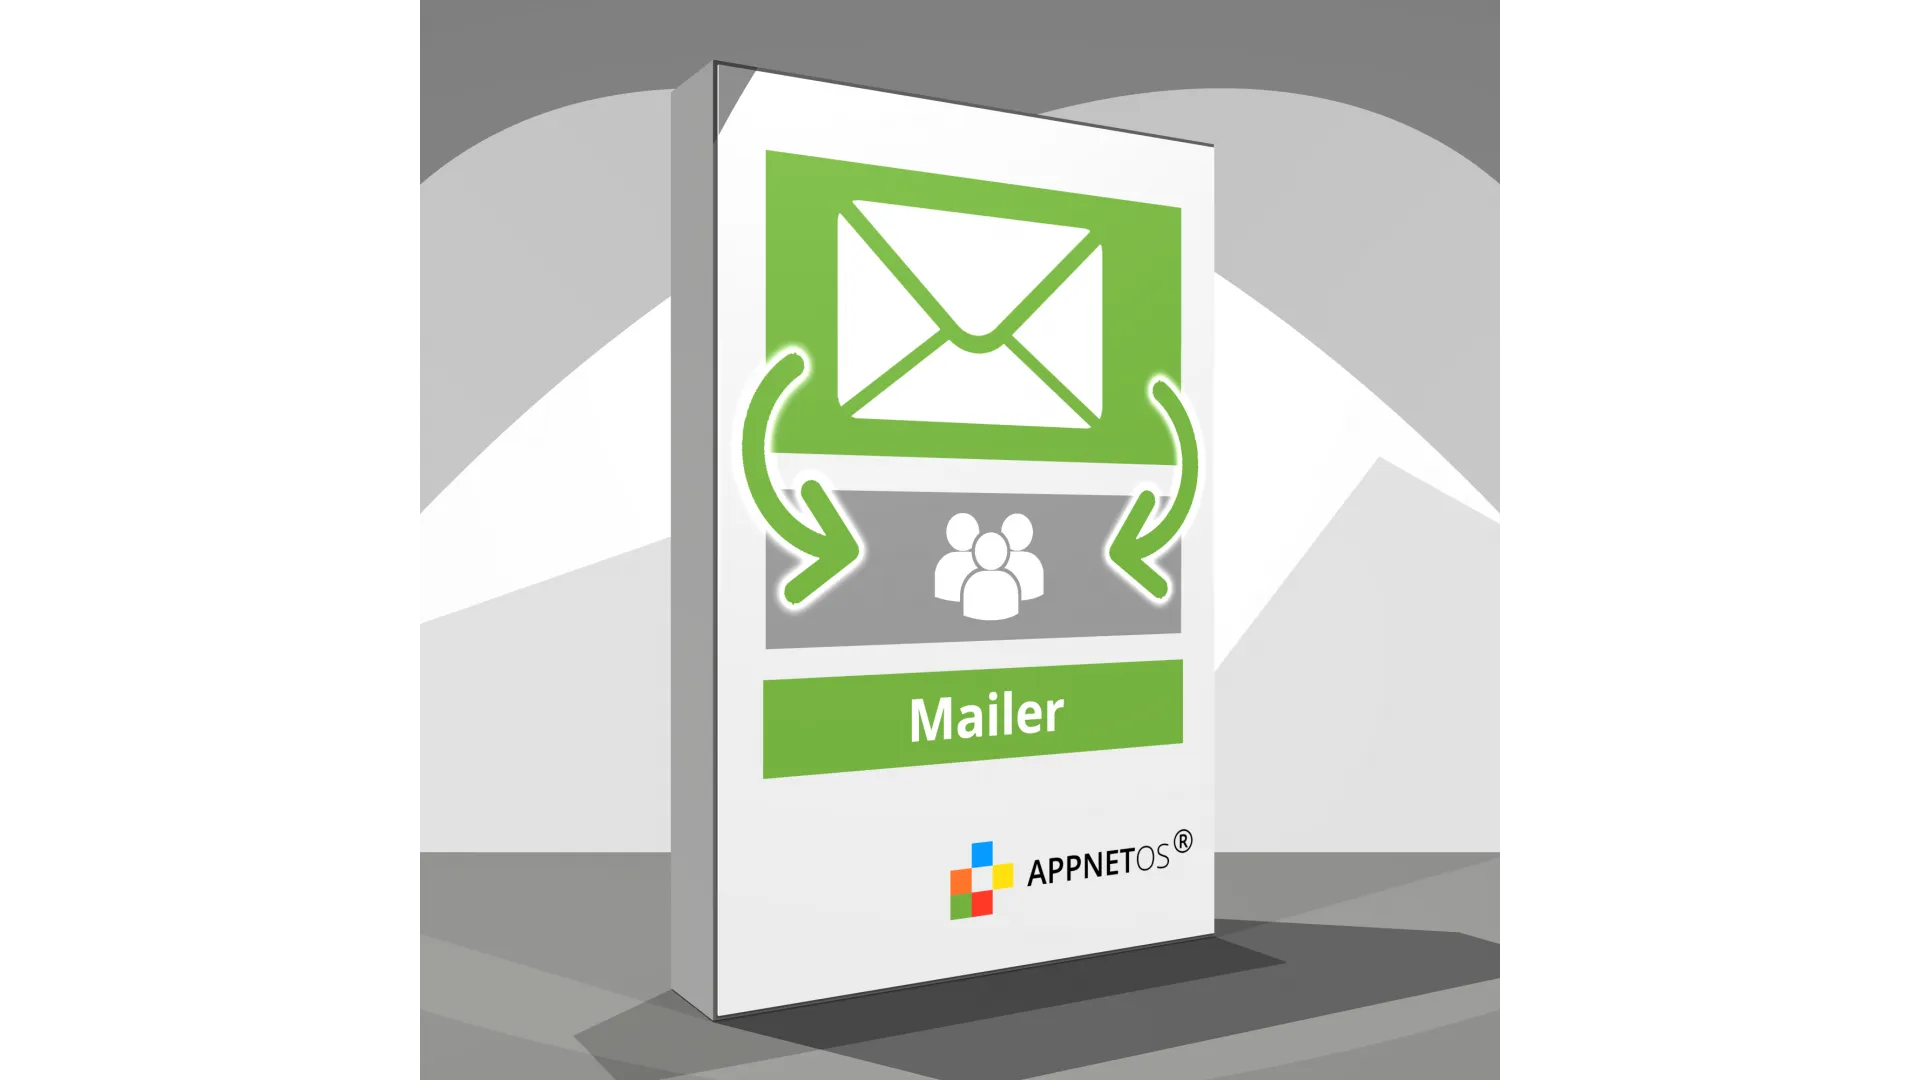 APPNET OS Mailer